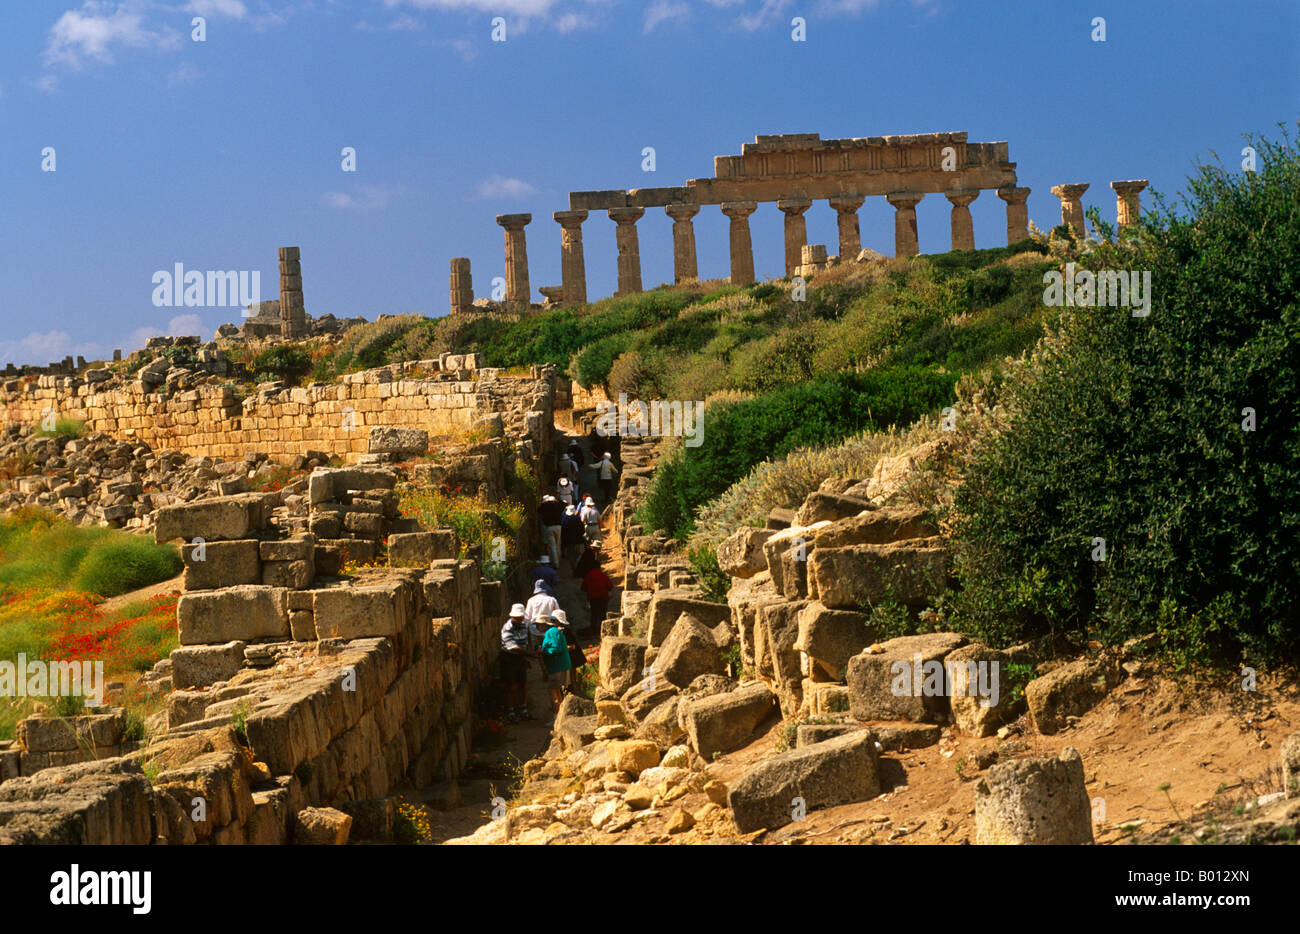 Italia, Sicilia, Trapani. Selinunte abandonados es una antigua ciudad griega, con las ruinas de una acrópolis y numerosos templos. Foto de stock